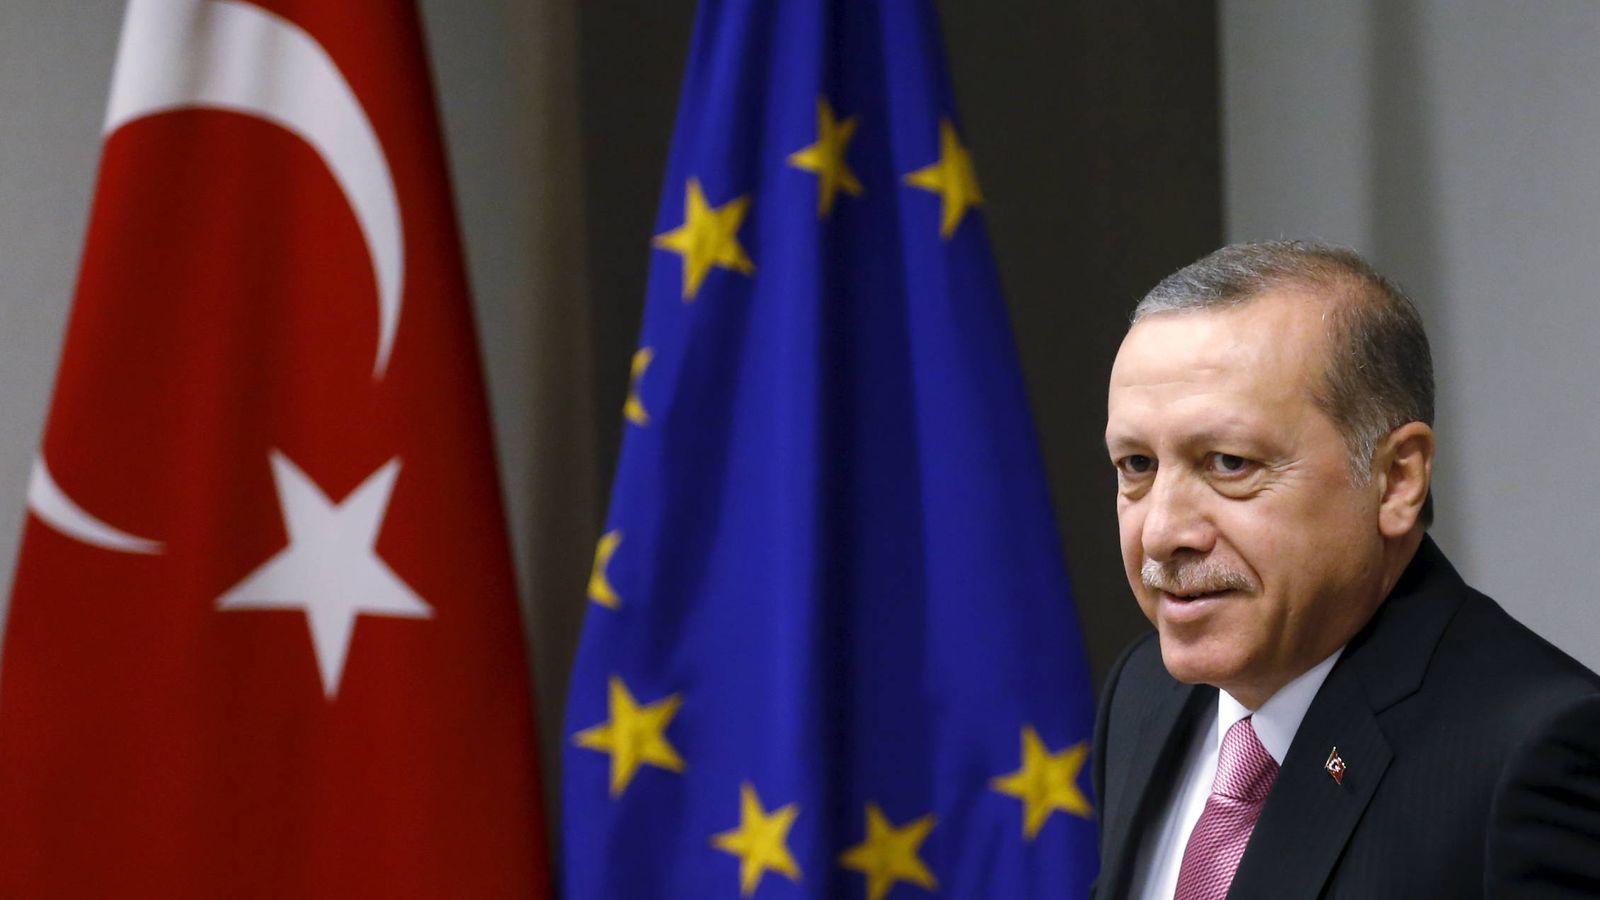 Foto: El presidente turco Recep Tayyip Erdogan espera el inicio de un encuentro del Consejo de Europa en Bruselas, en octubre de 2015 (Reuters)